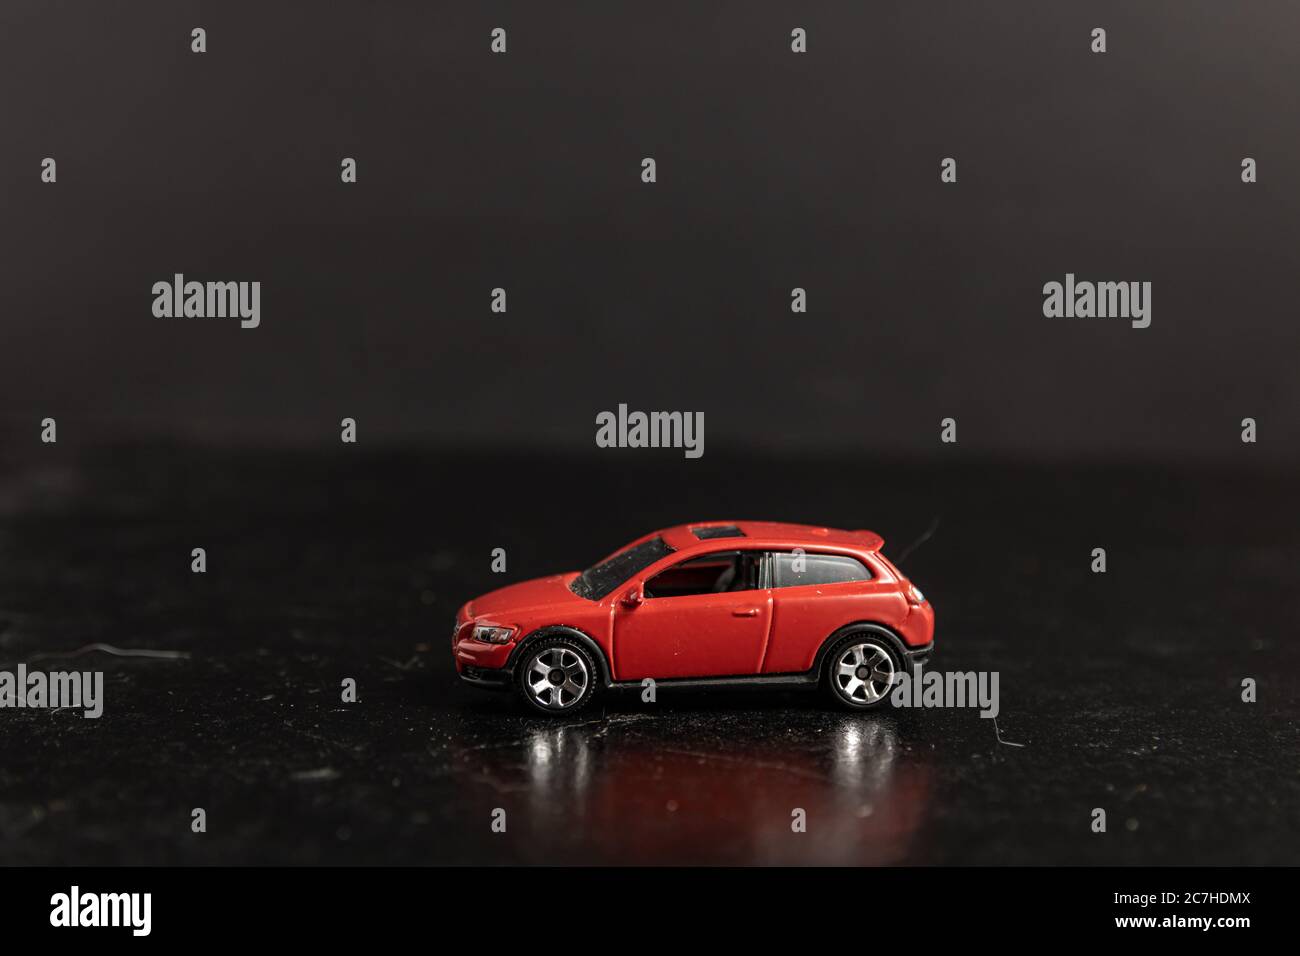 Selektive Fokusaufnahme eines roten Spielzeugautos auf einem Schwarze Oberfläche Stockfoto